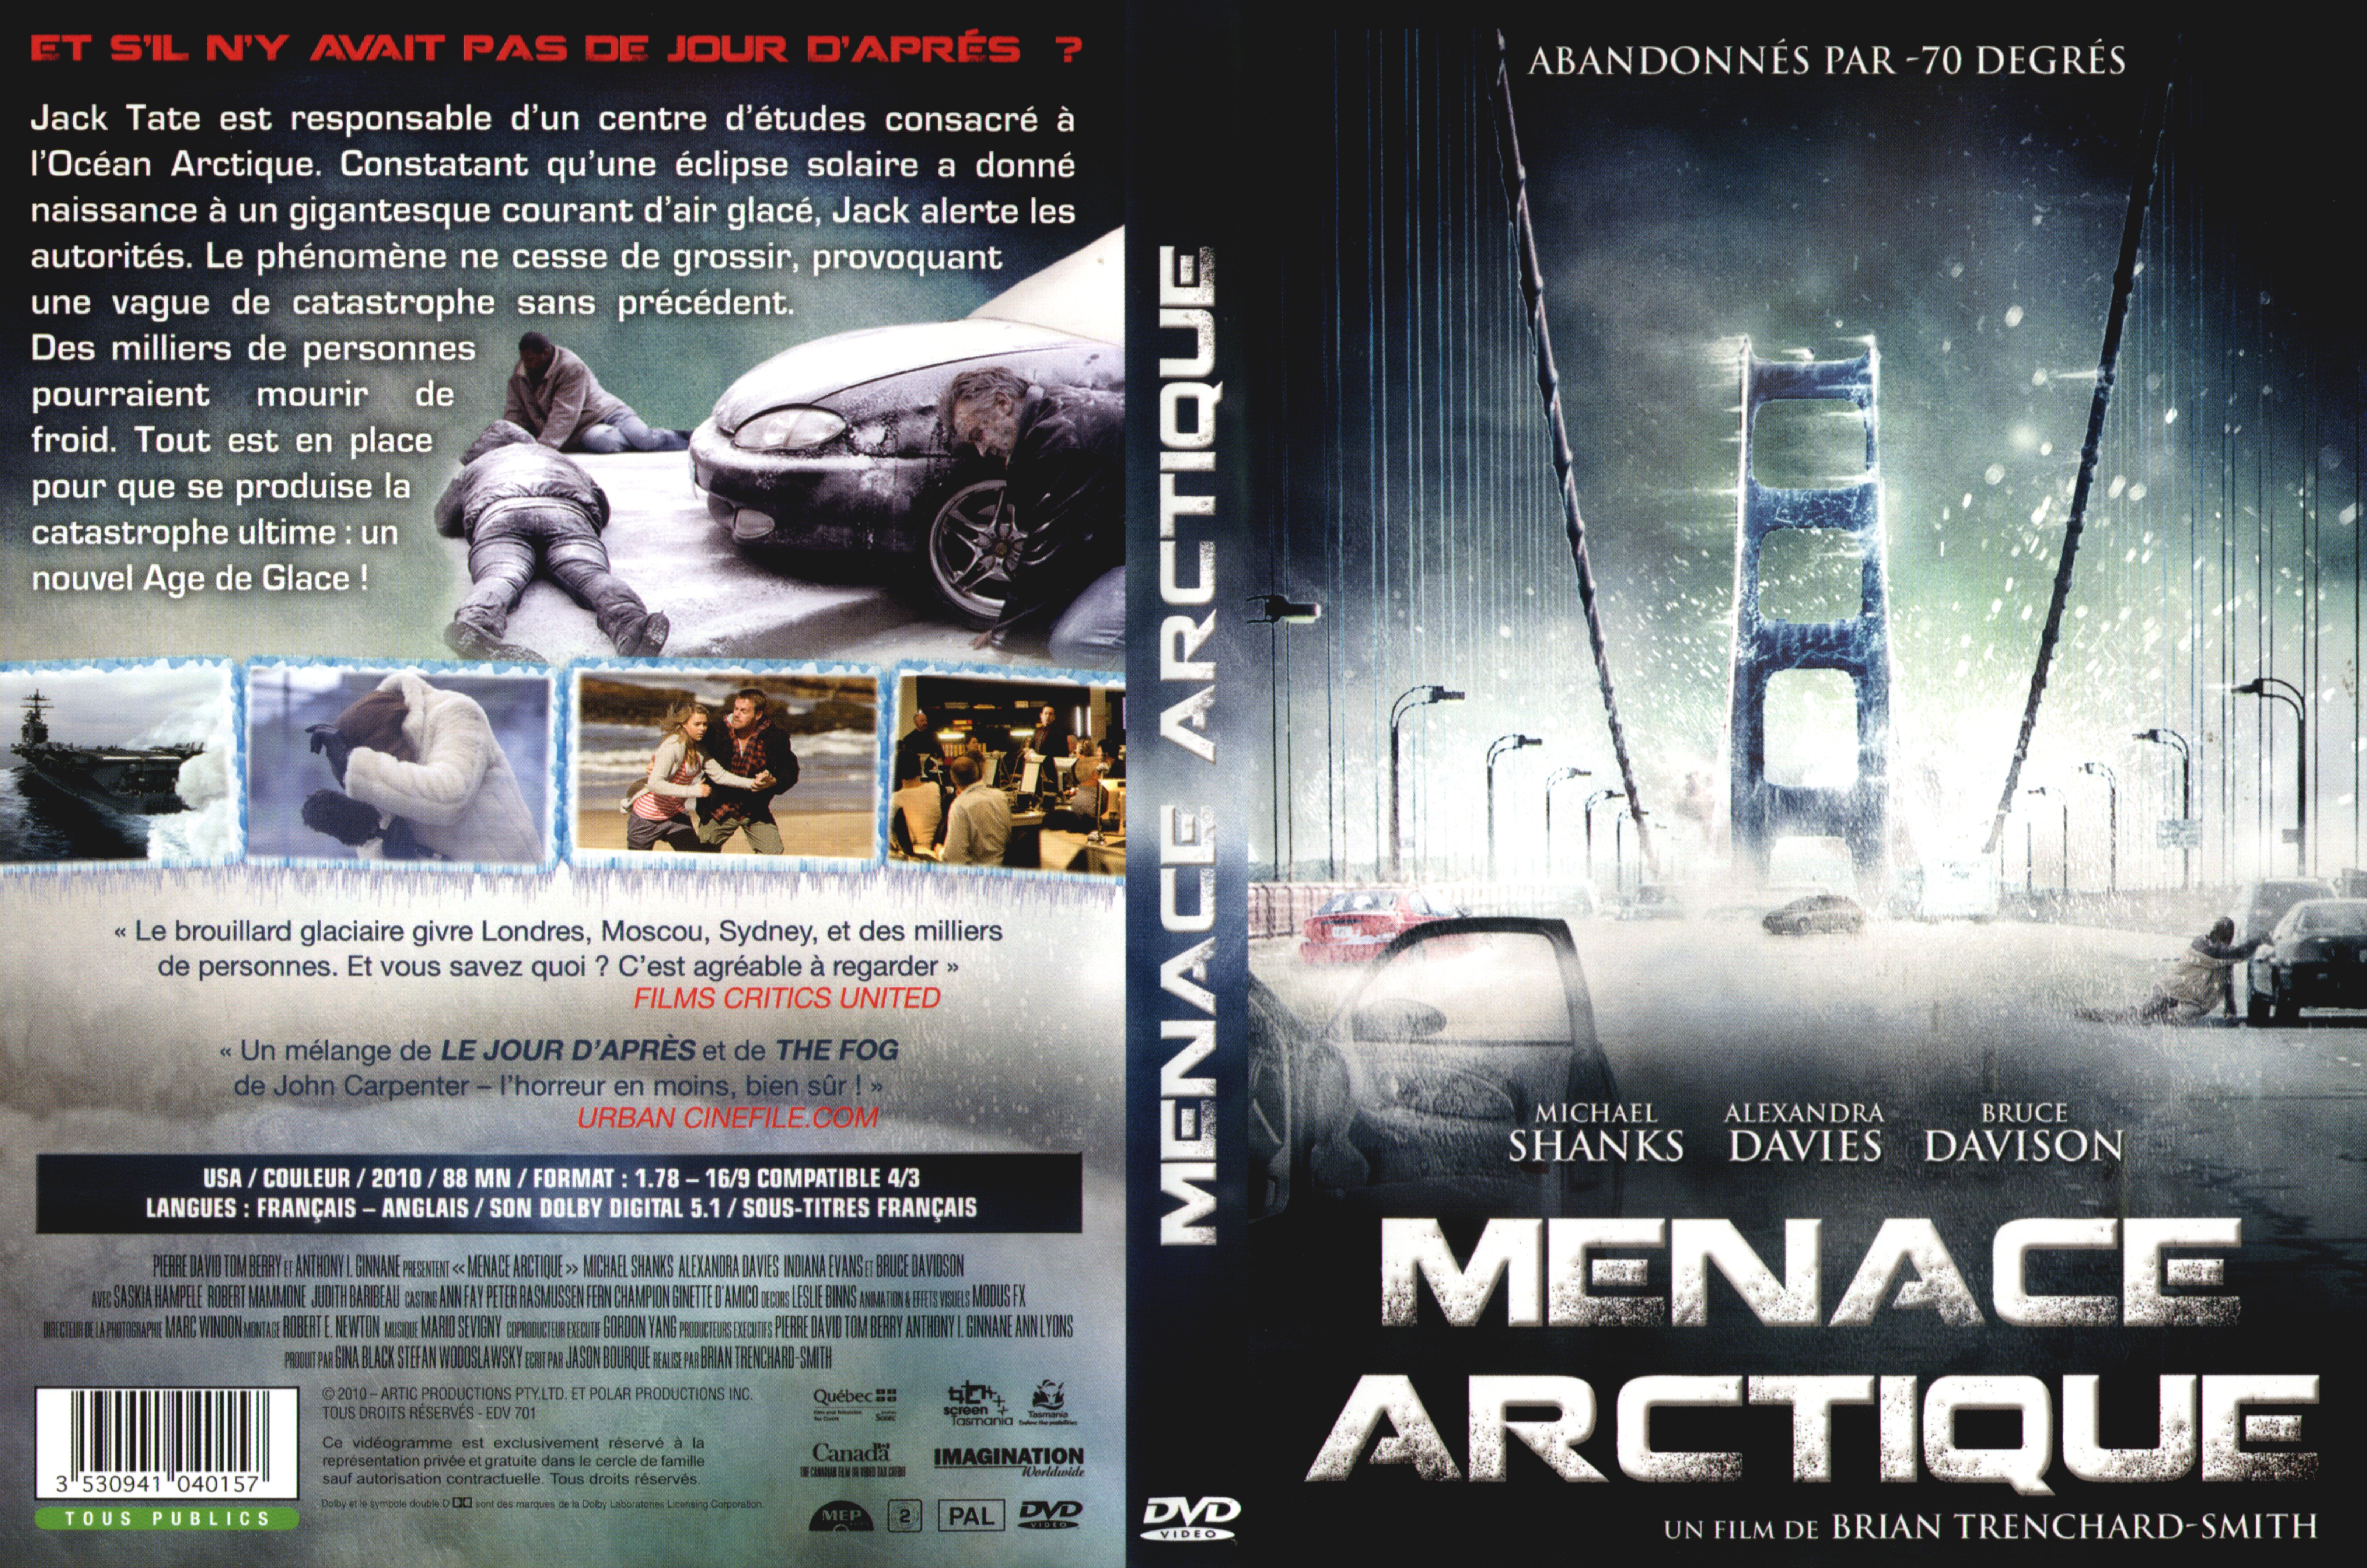 Jaquette DVD Menace arctique